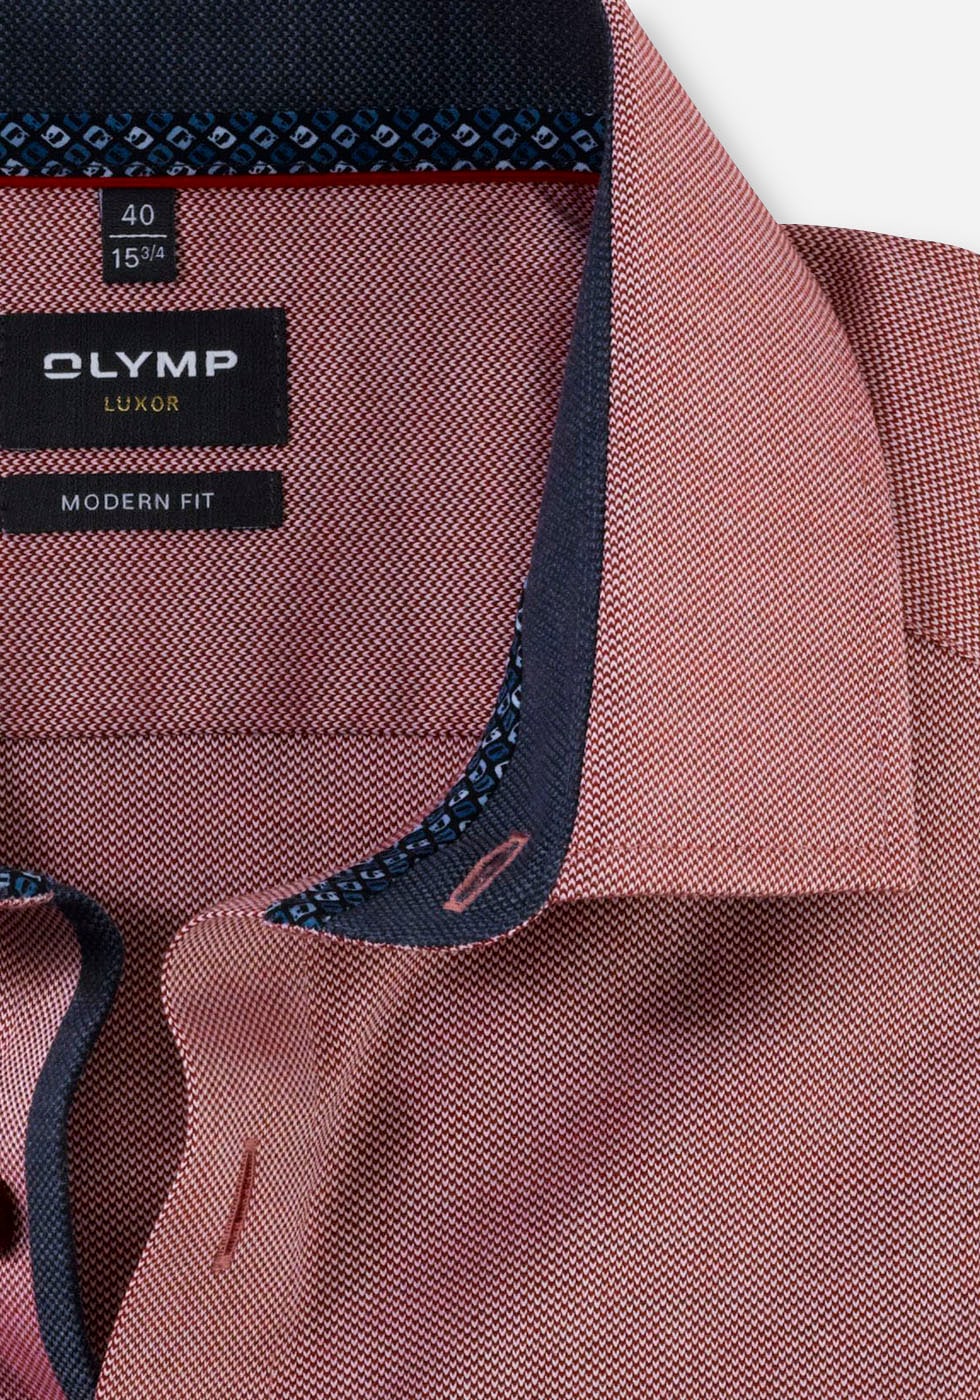 fit«, Logo-Stitching Businesshemd modern OTTO »Luxor tonigem bei online OLYMP mit shoppen